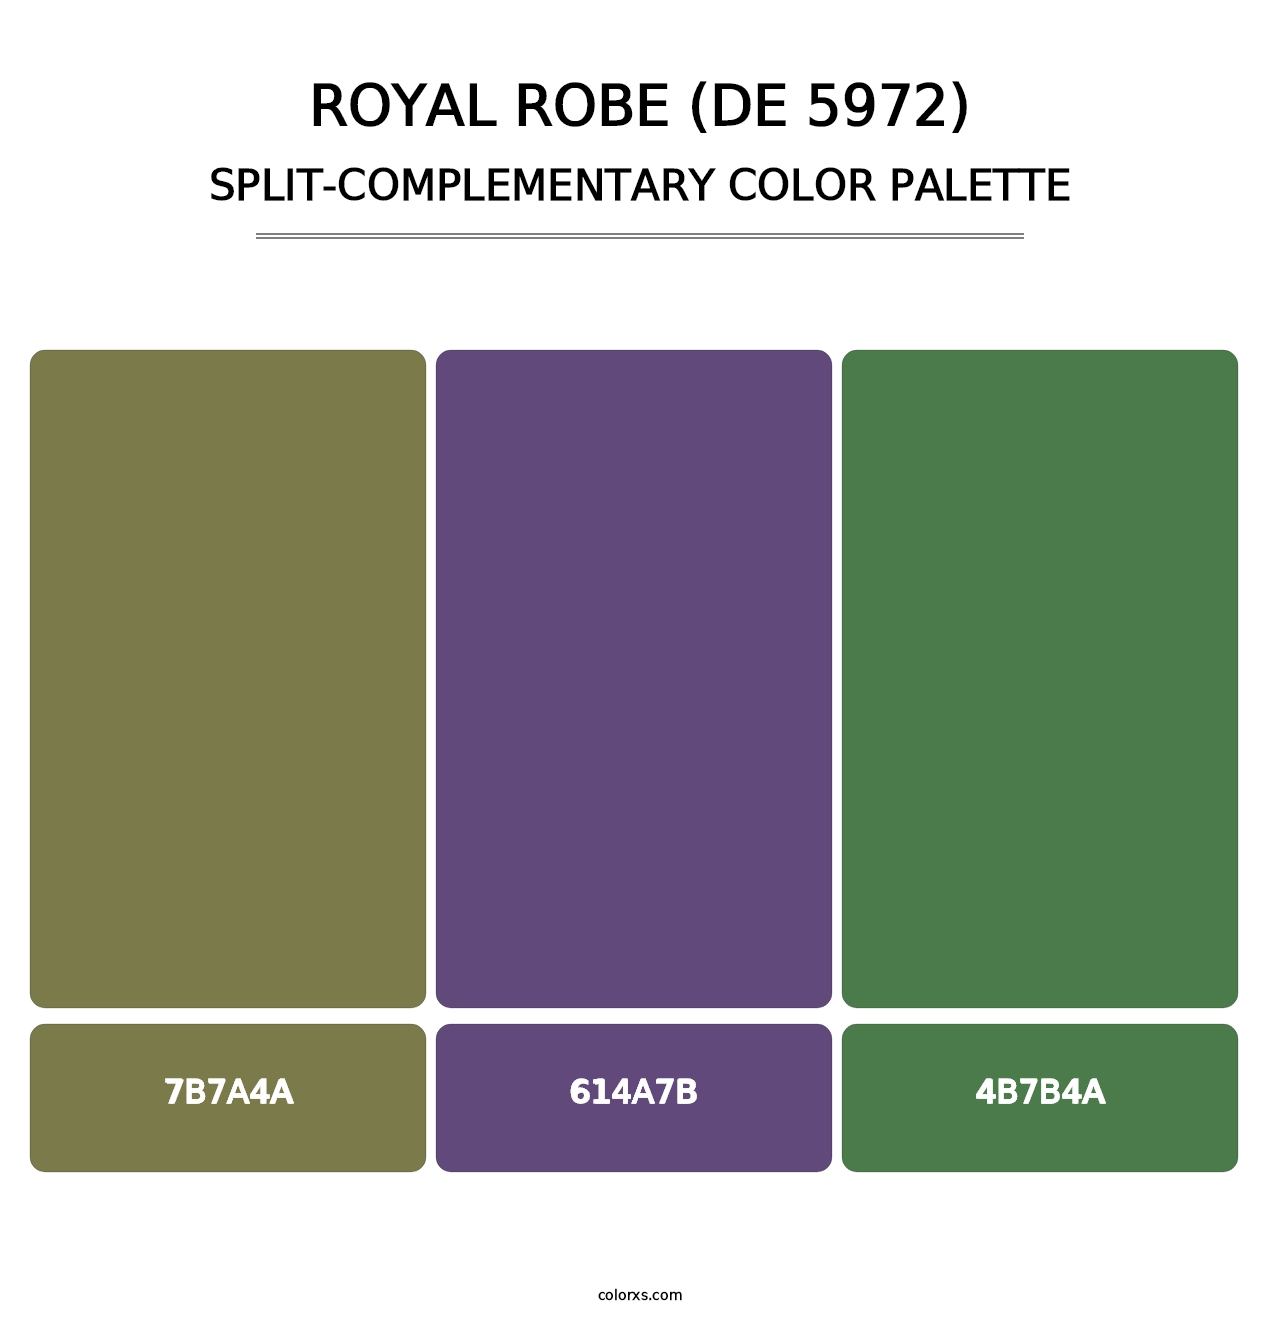 Royal Robe (DE 5972) - Split-Complementary Color Palette